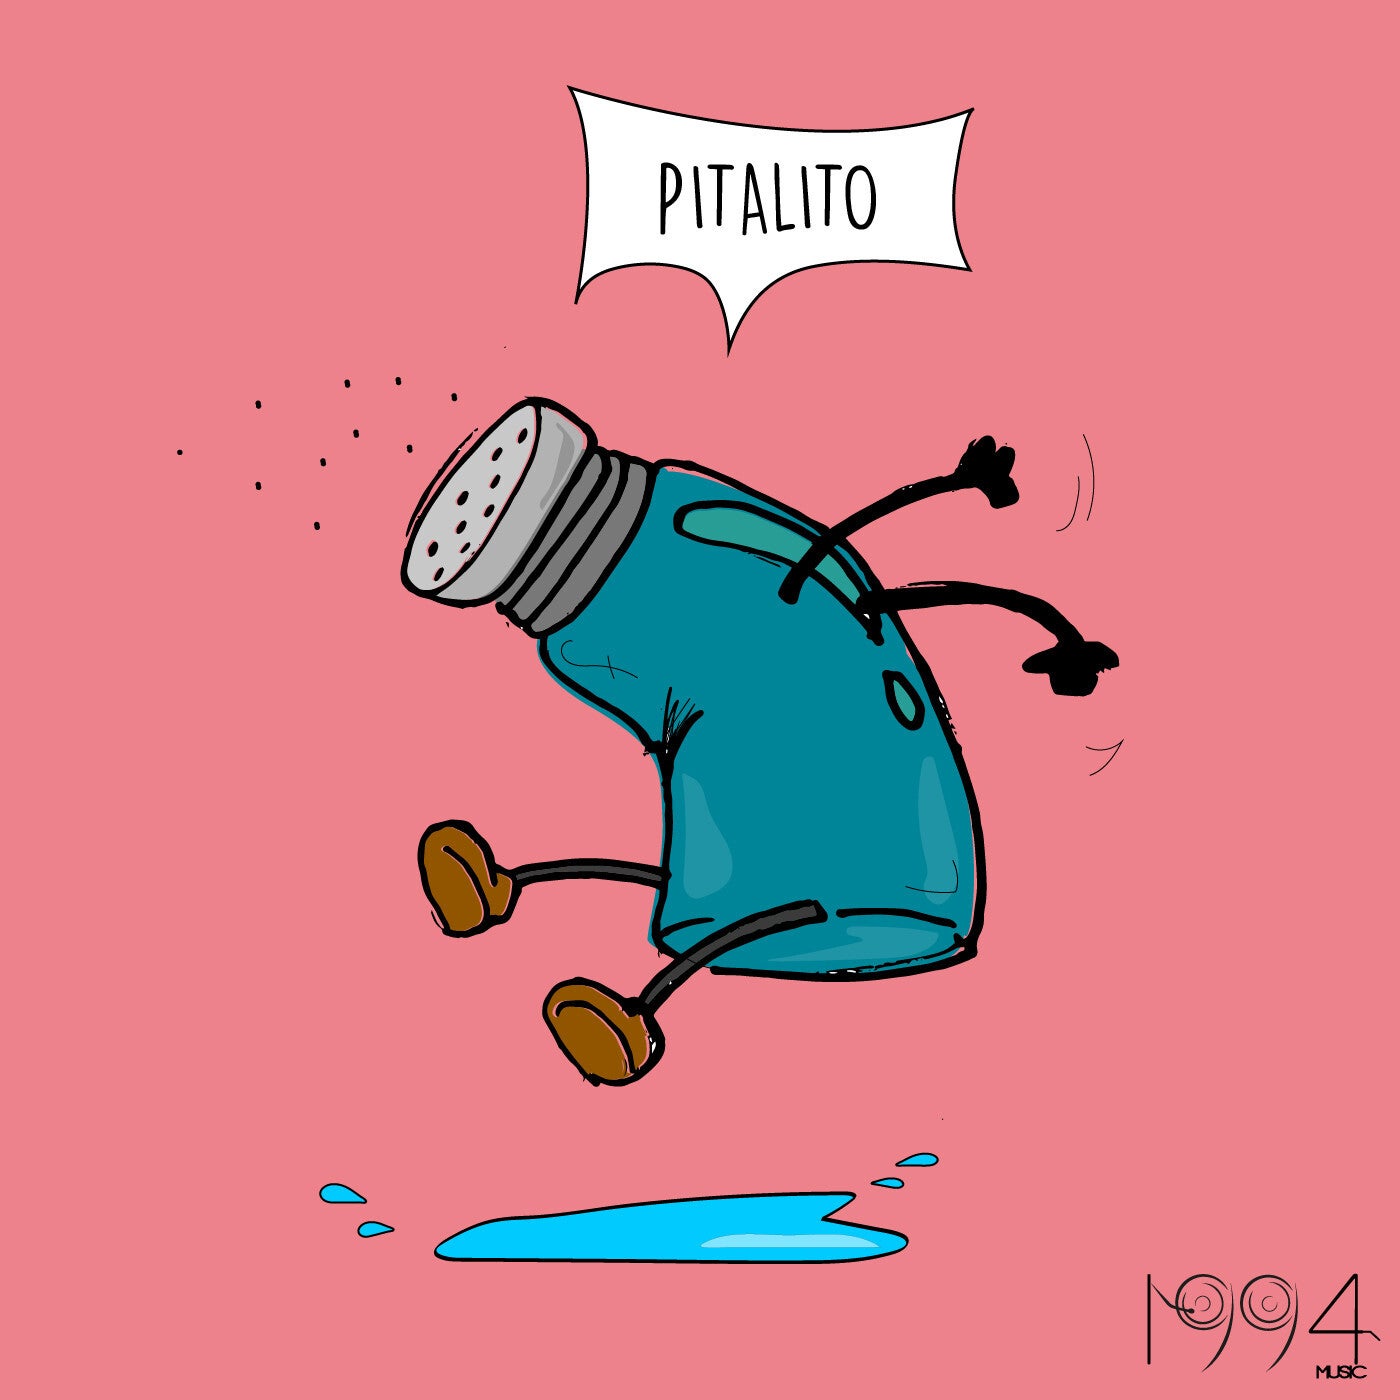 Pitalito